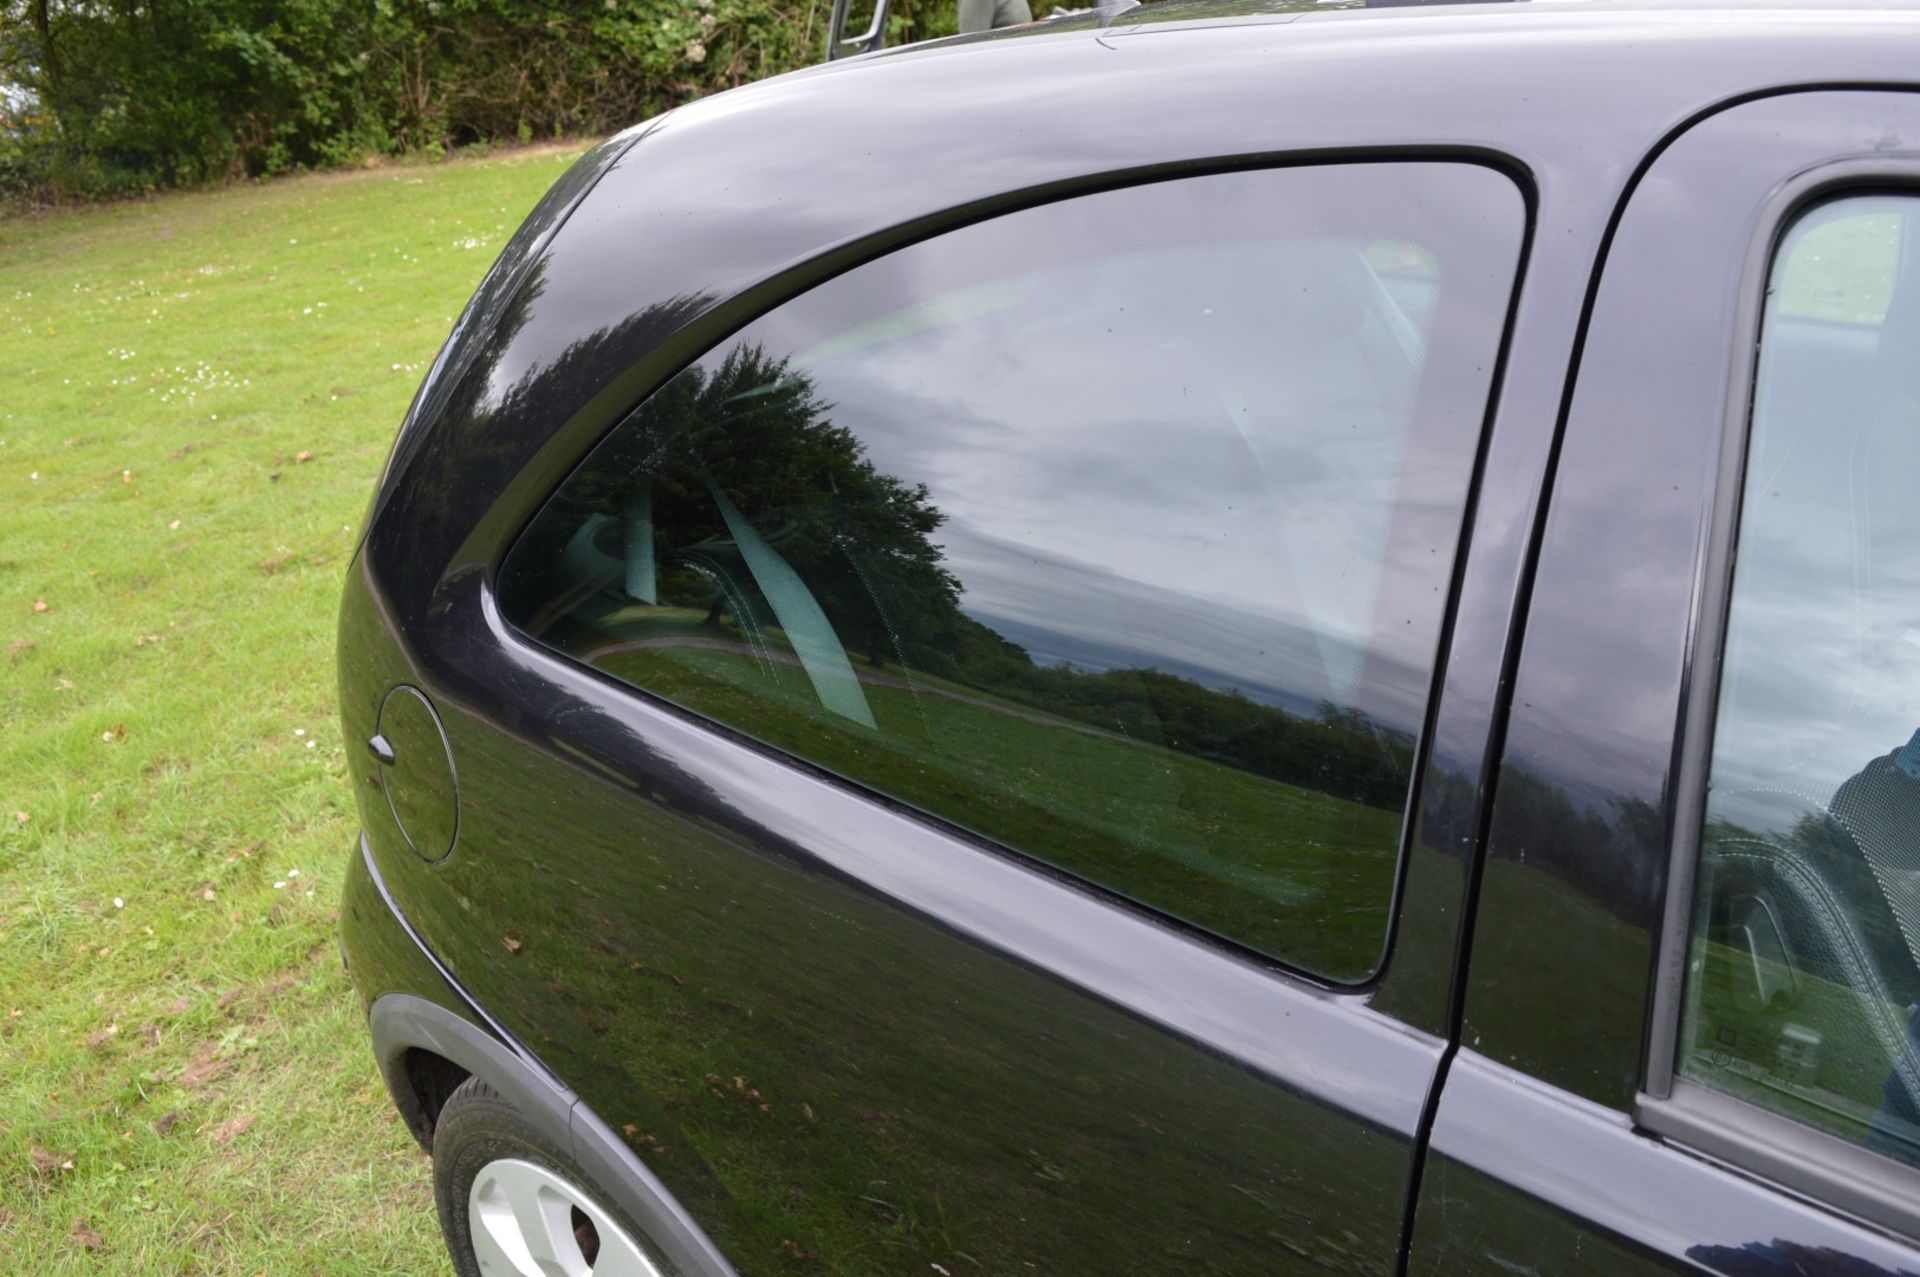 1 x Vauxhall Corsa SXI+ 3 Door Hatchback 1.2 - 2006 56 Plate - 78,000 Miles - MOT June 2018 - Image 33 of 36